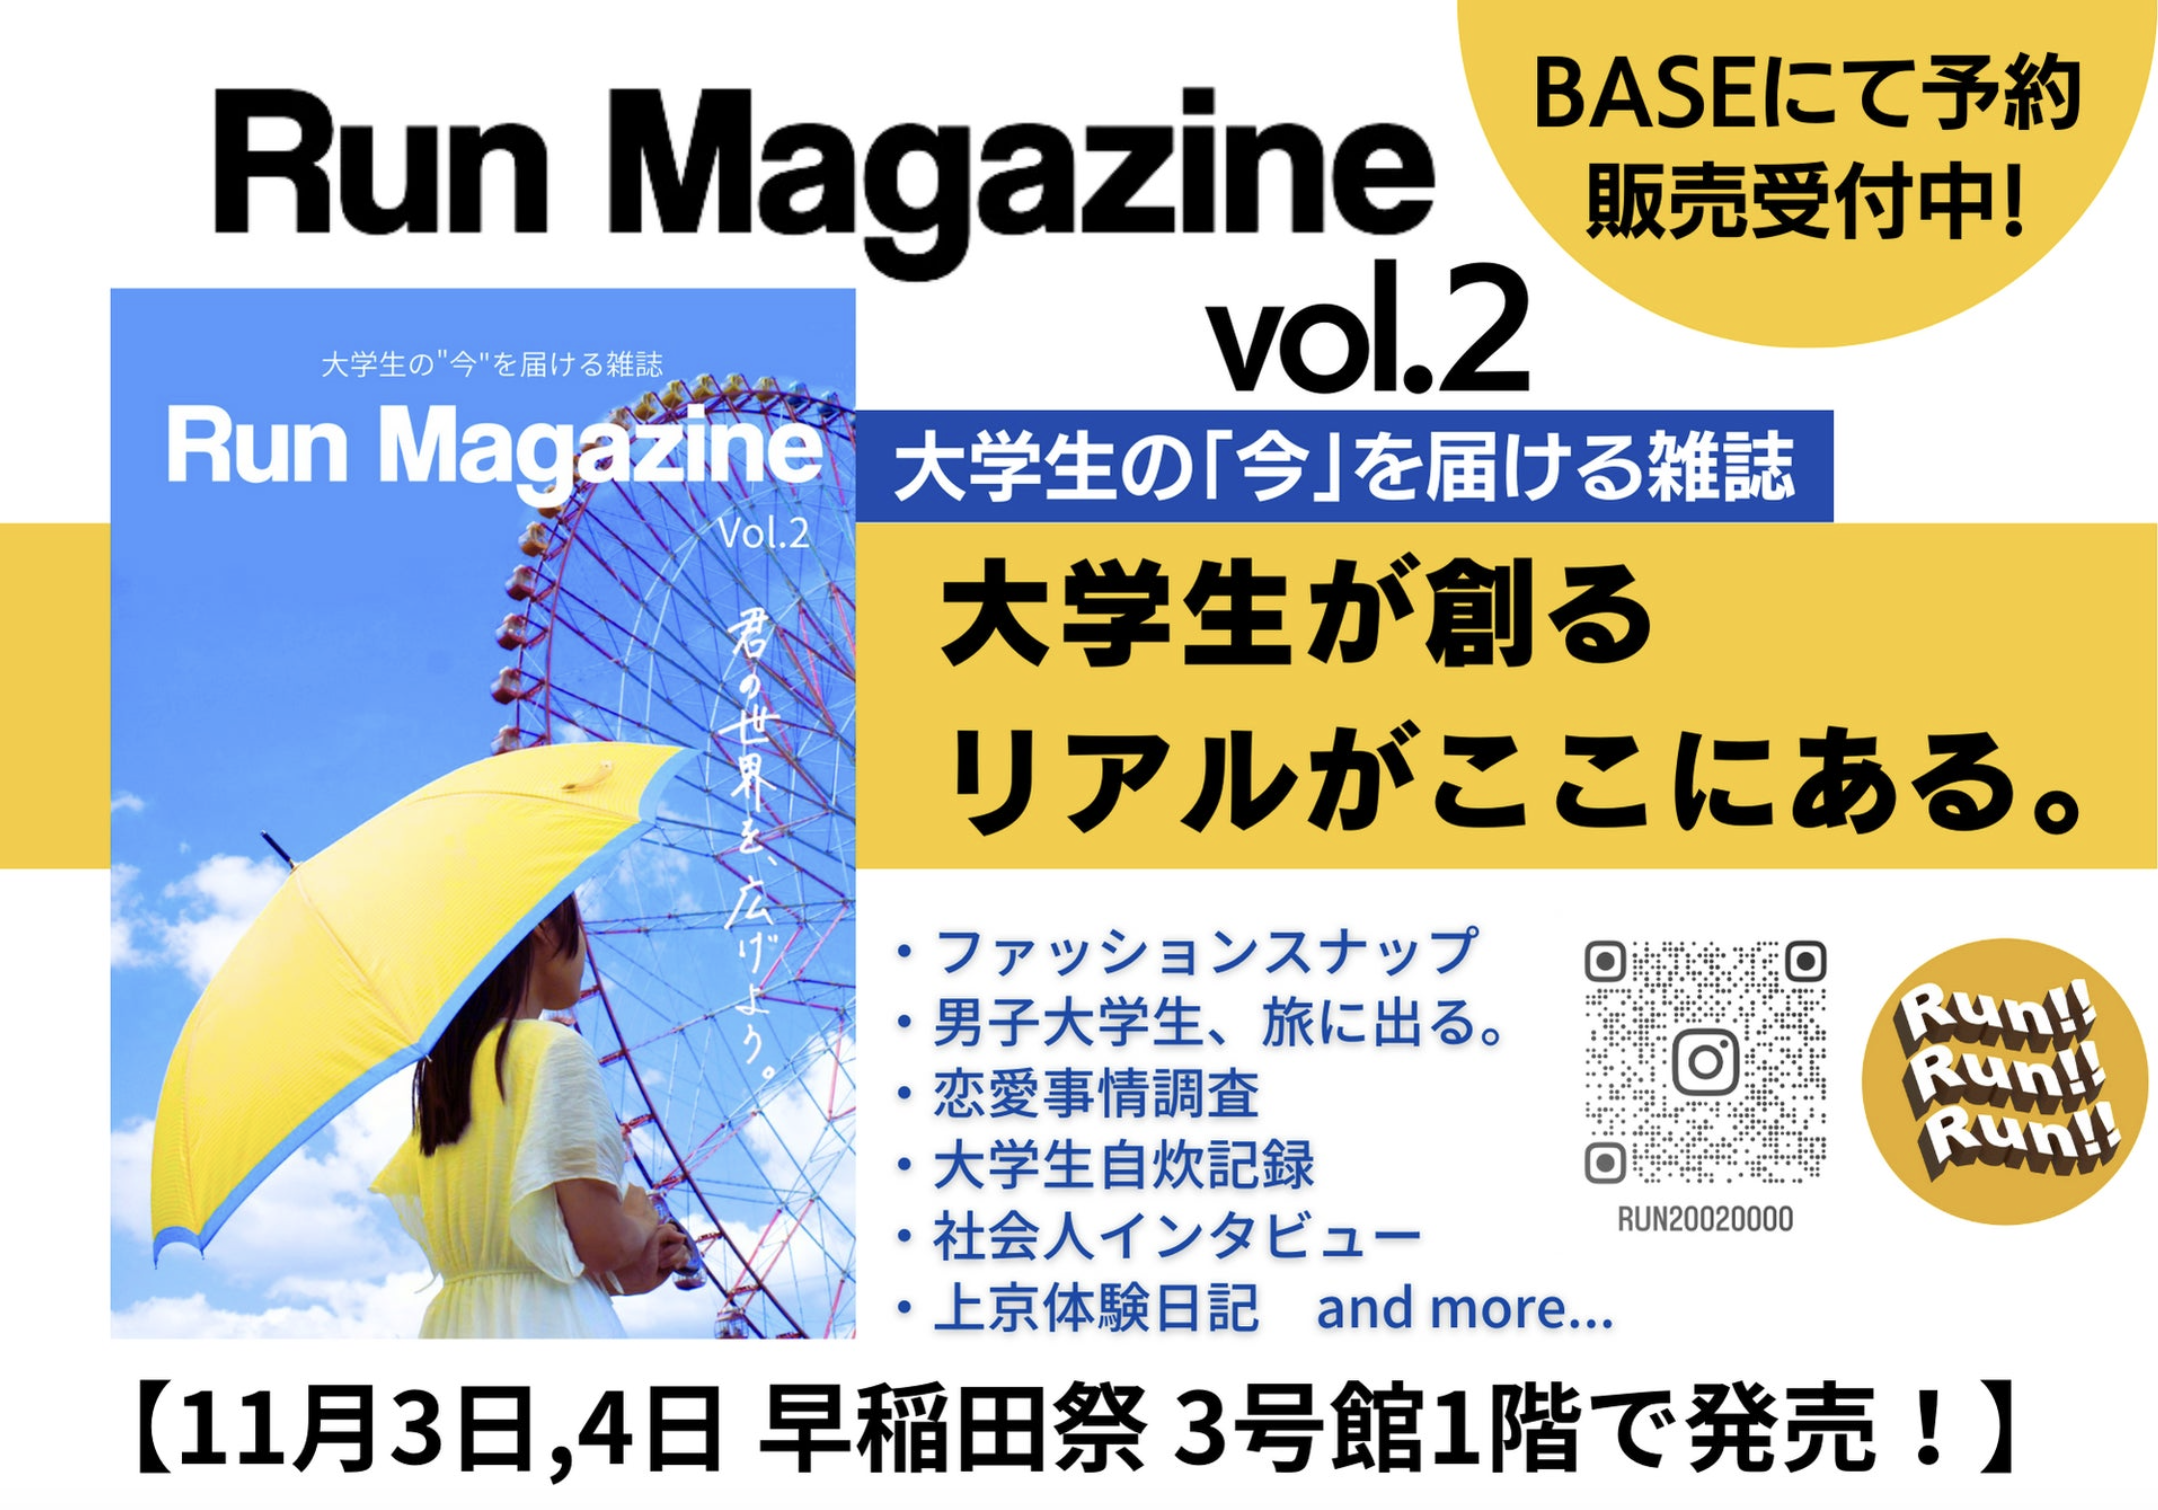 早稲田大学の情報系雑誌【Run】にCEO小池と弊社アプリ【ビーユー】が掲載。